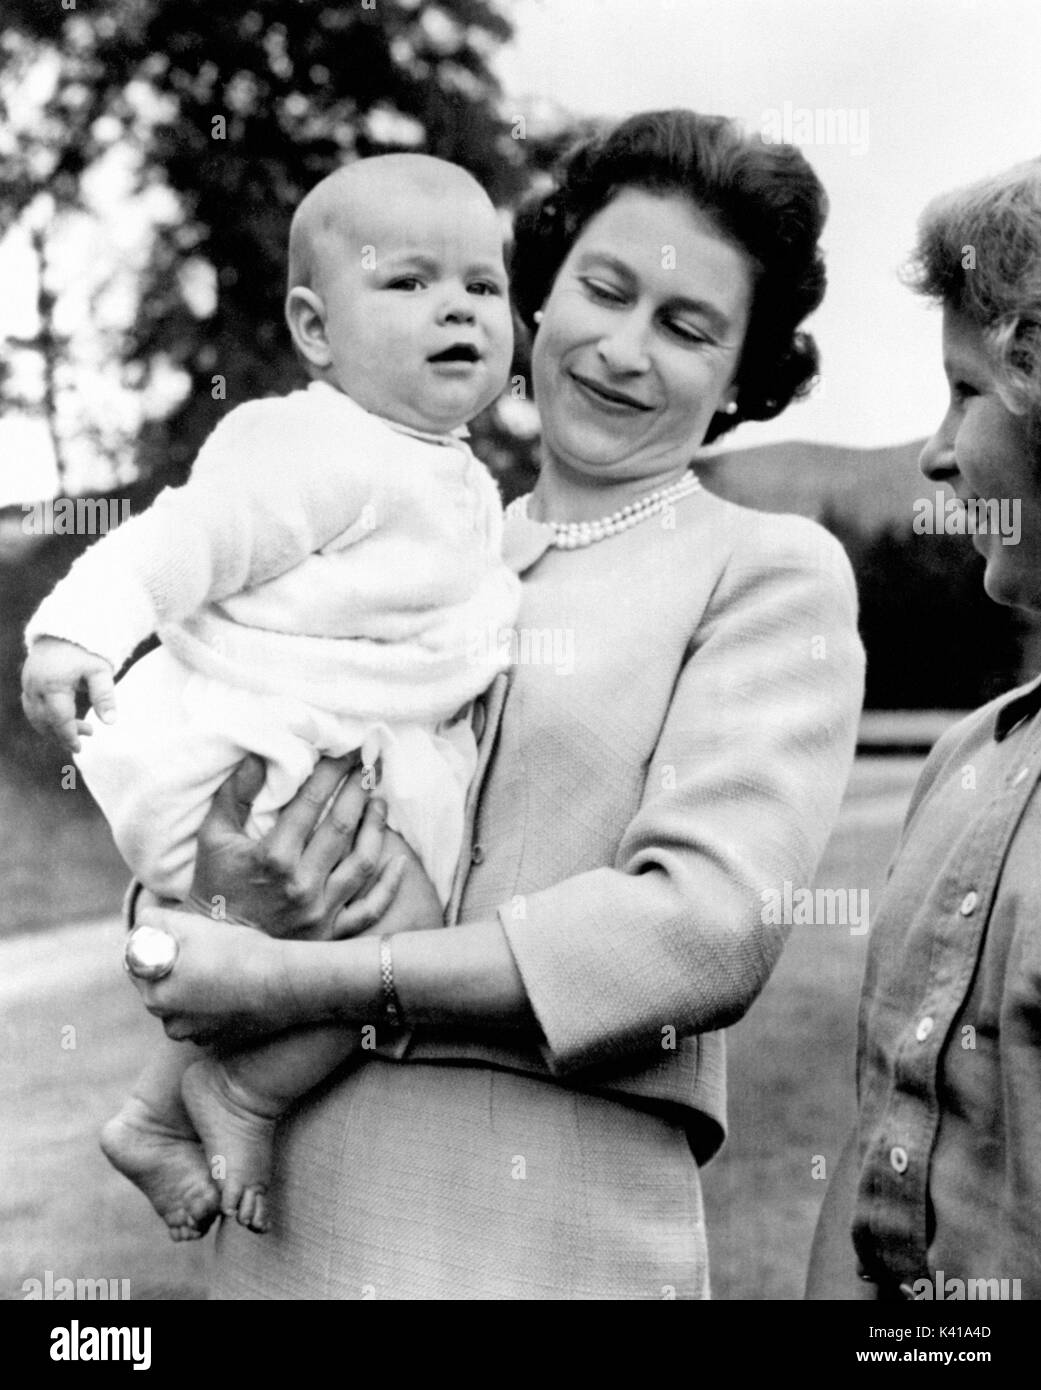 Foto vom 08/11/1960 von Königin Elizabeth II ihr drittes Kind Prinz Andrew Holding, bei einem Ausflug in das Gelände bei Balmoral, Schottland. Der Herzog und die Herzogin von Cambridge erwarten ihr drittes Kind, Kensington Palace hat angekündigt. Stockfoto